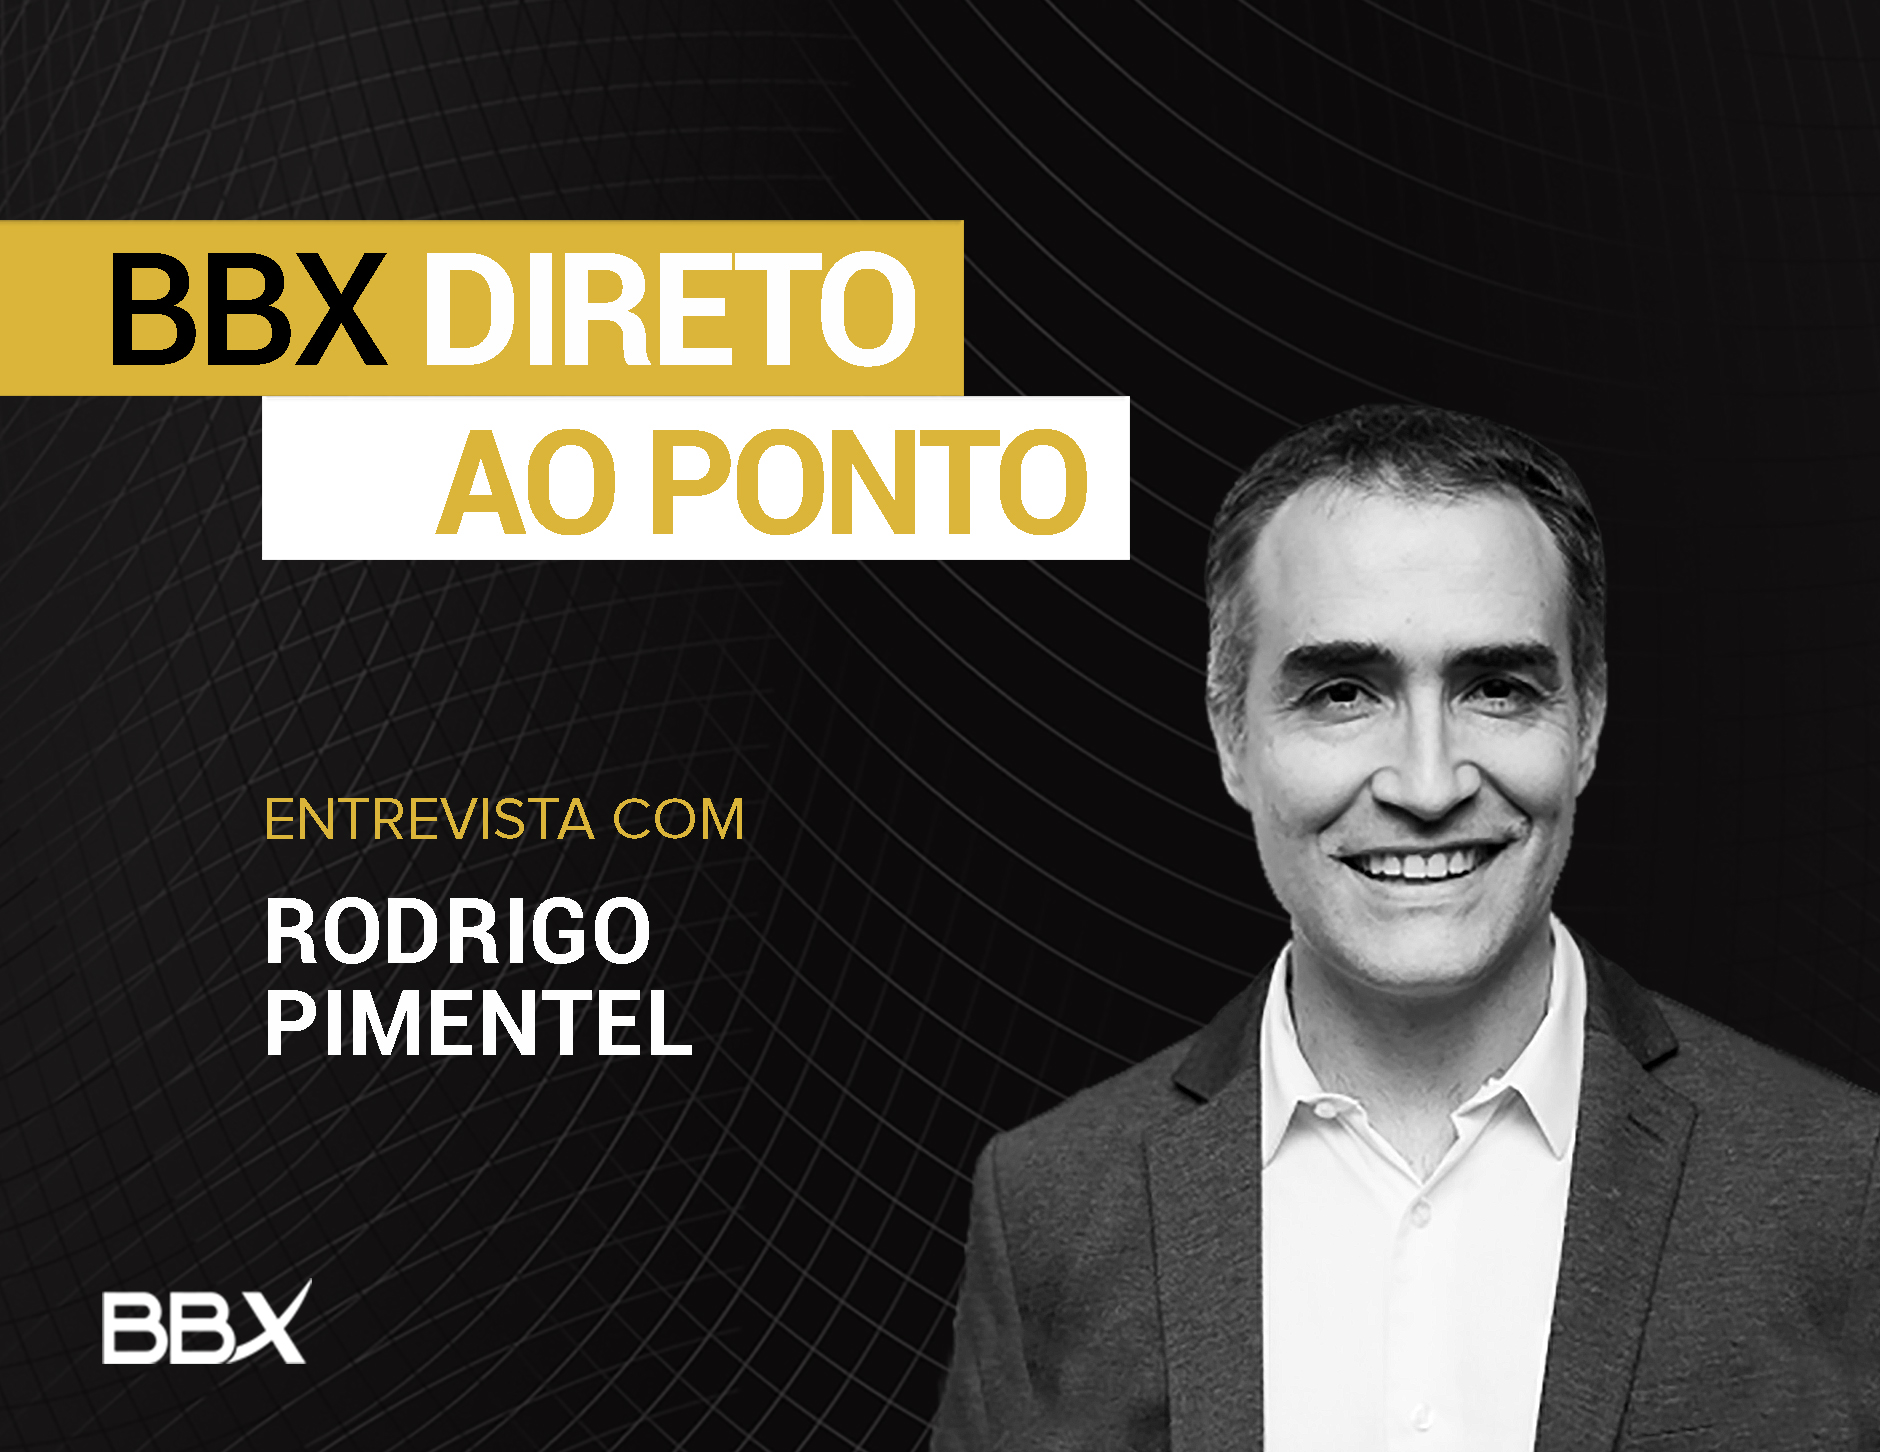 BBX Direto ao Ponto: Entrevista com Rodrigo Pimentel